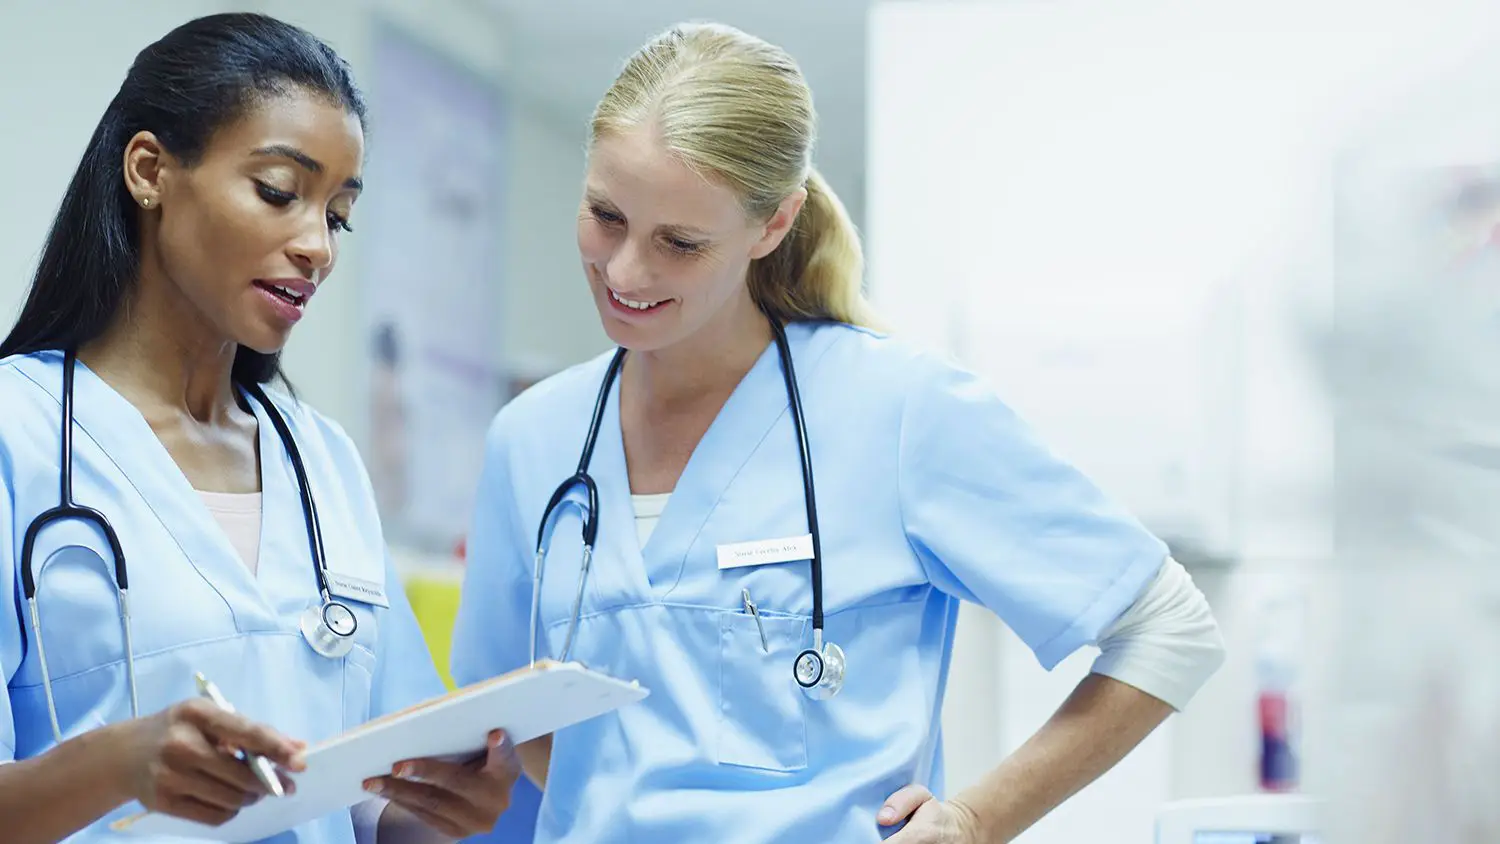 Choosing a Nurse Practitioner Specialty